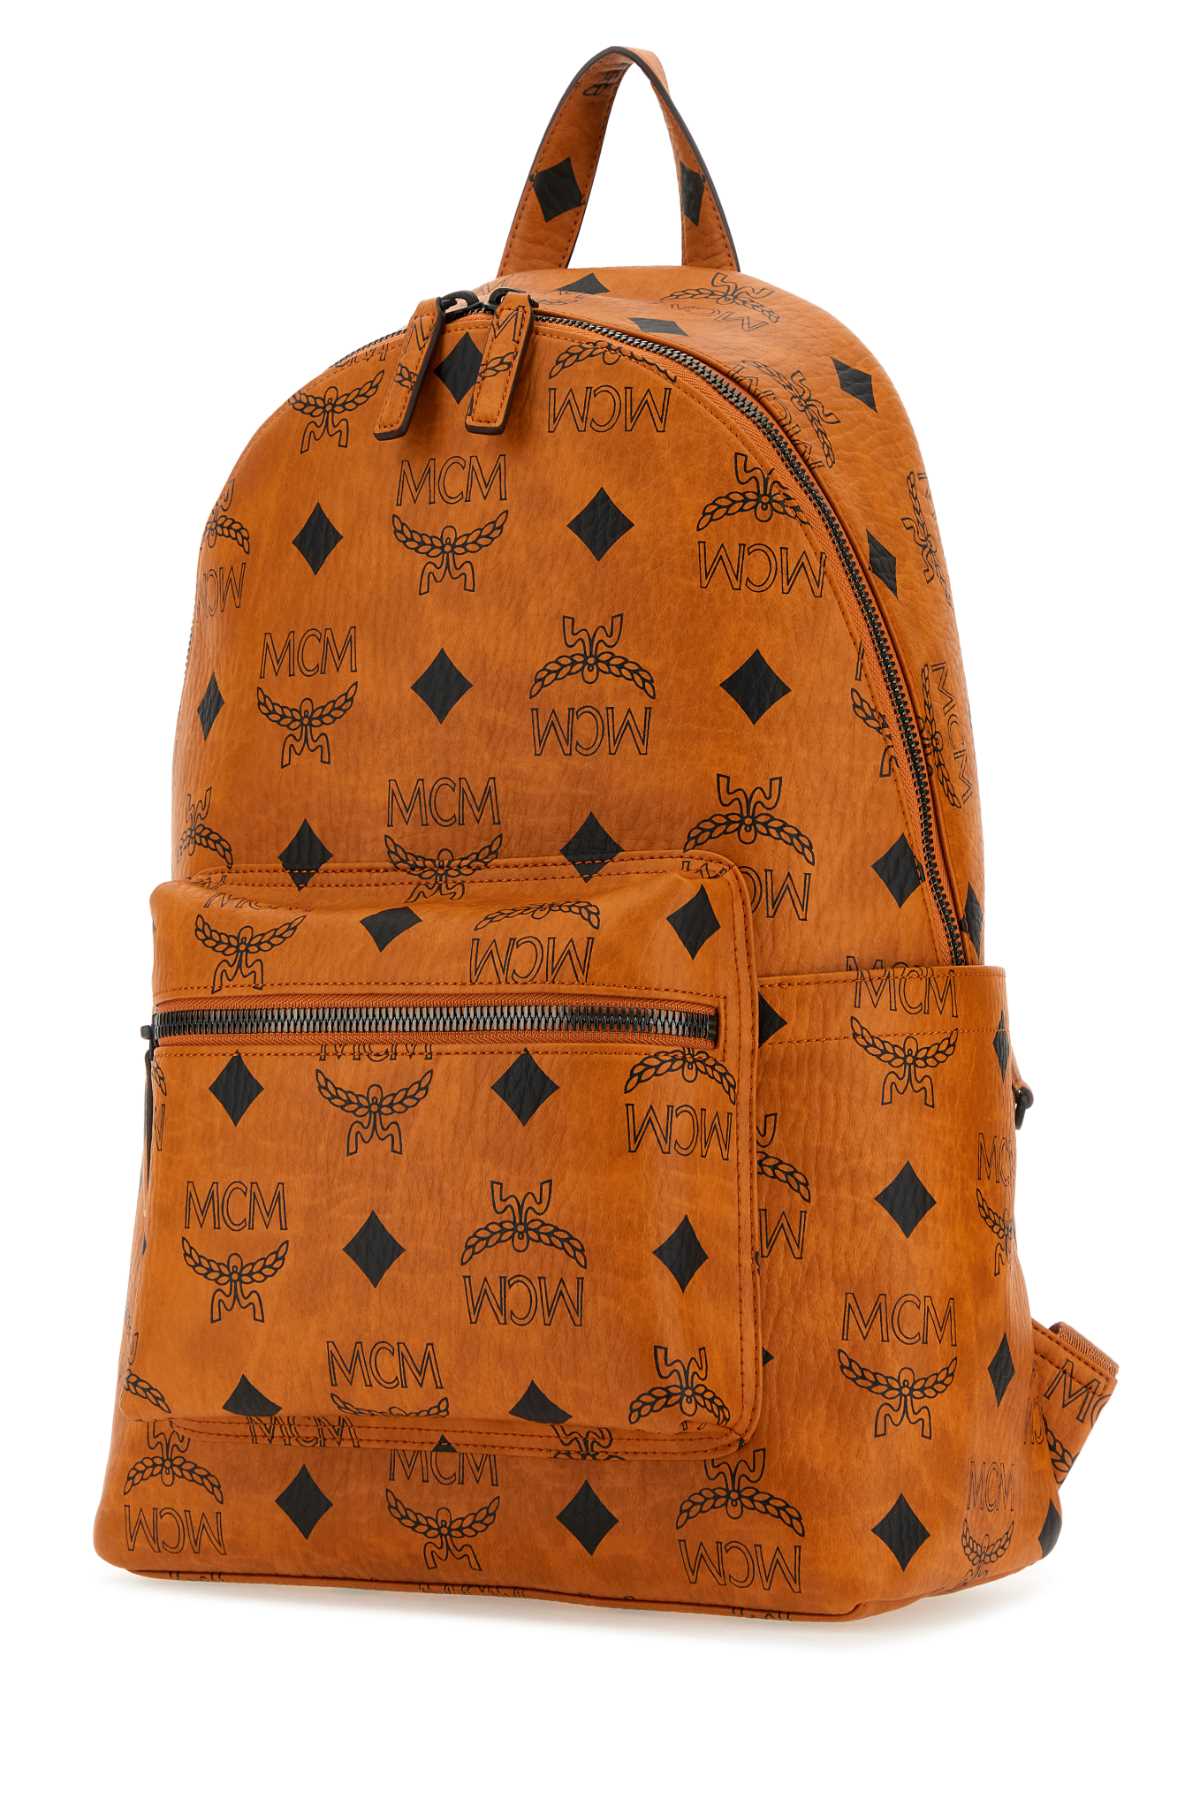 Mcm Printed Canvas Medium Stark Backpack In Cognac